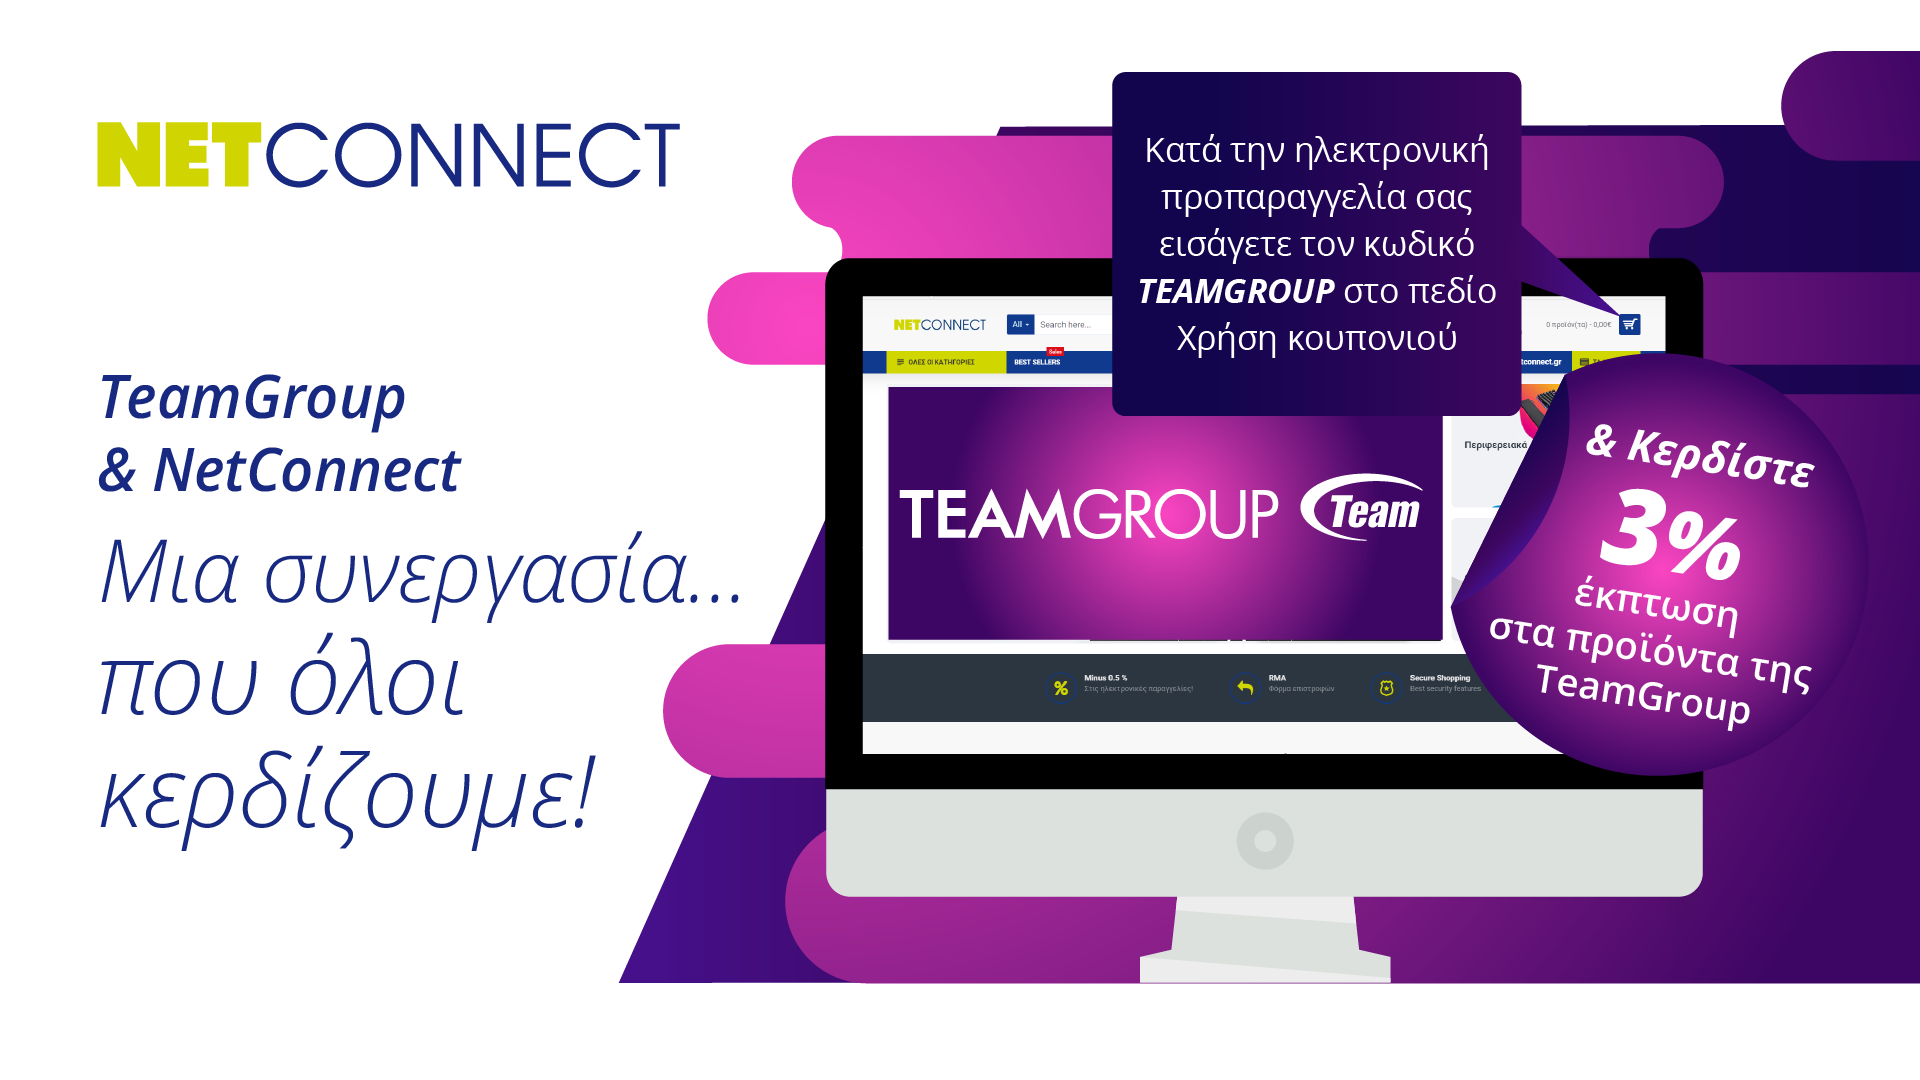 Επωφεληθείτε από την νέα μας συνεργασία & κερδίστε 3% έκπτωση στα προϊόντα της Teamgroup